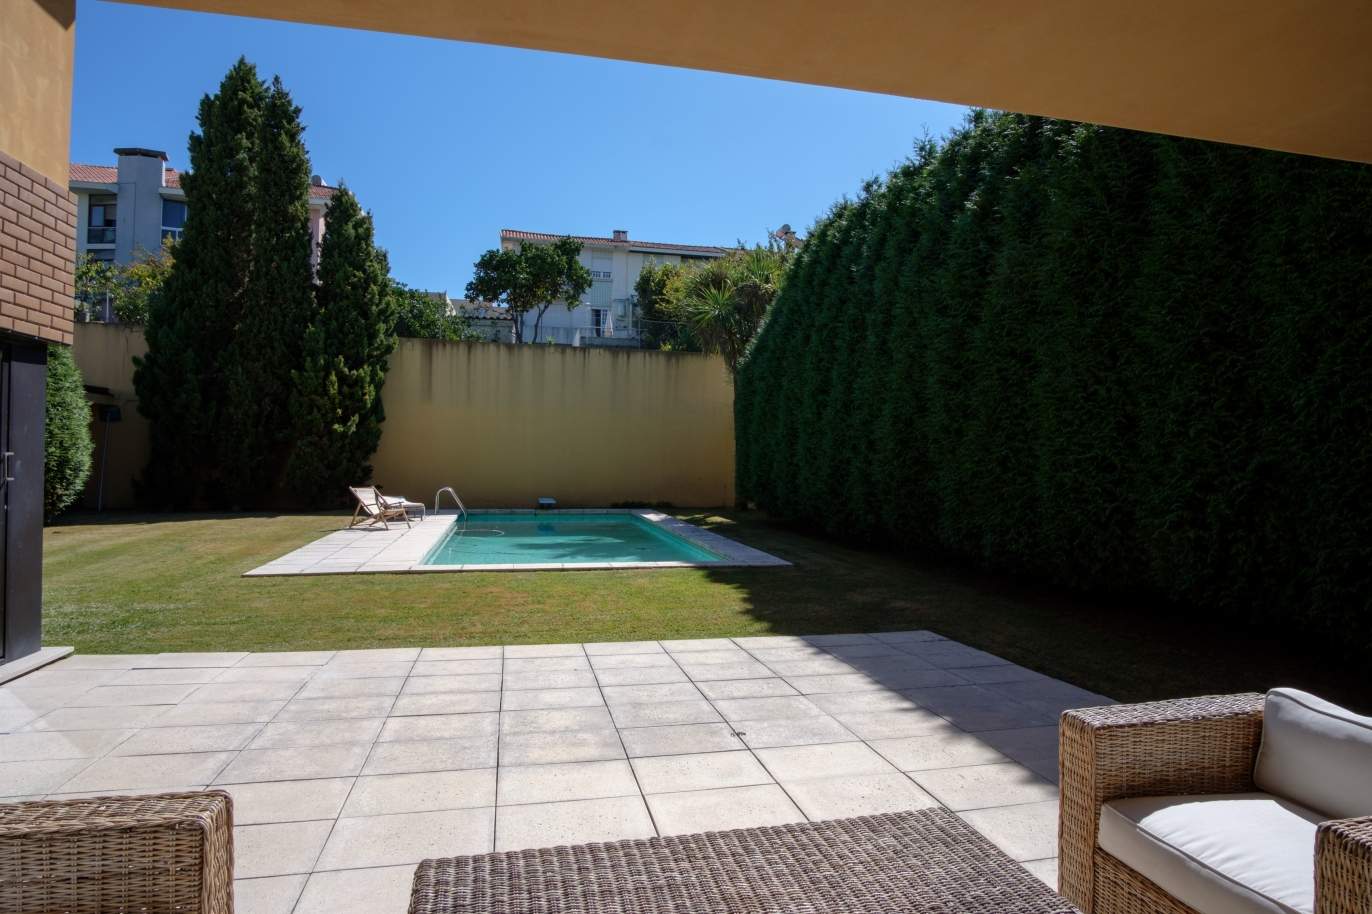 Venta de villa de 4 frentes con piscina y jardín, S. Mamede Infesta_118953